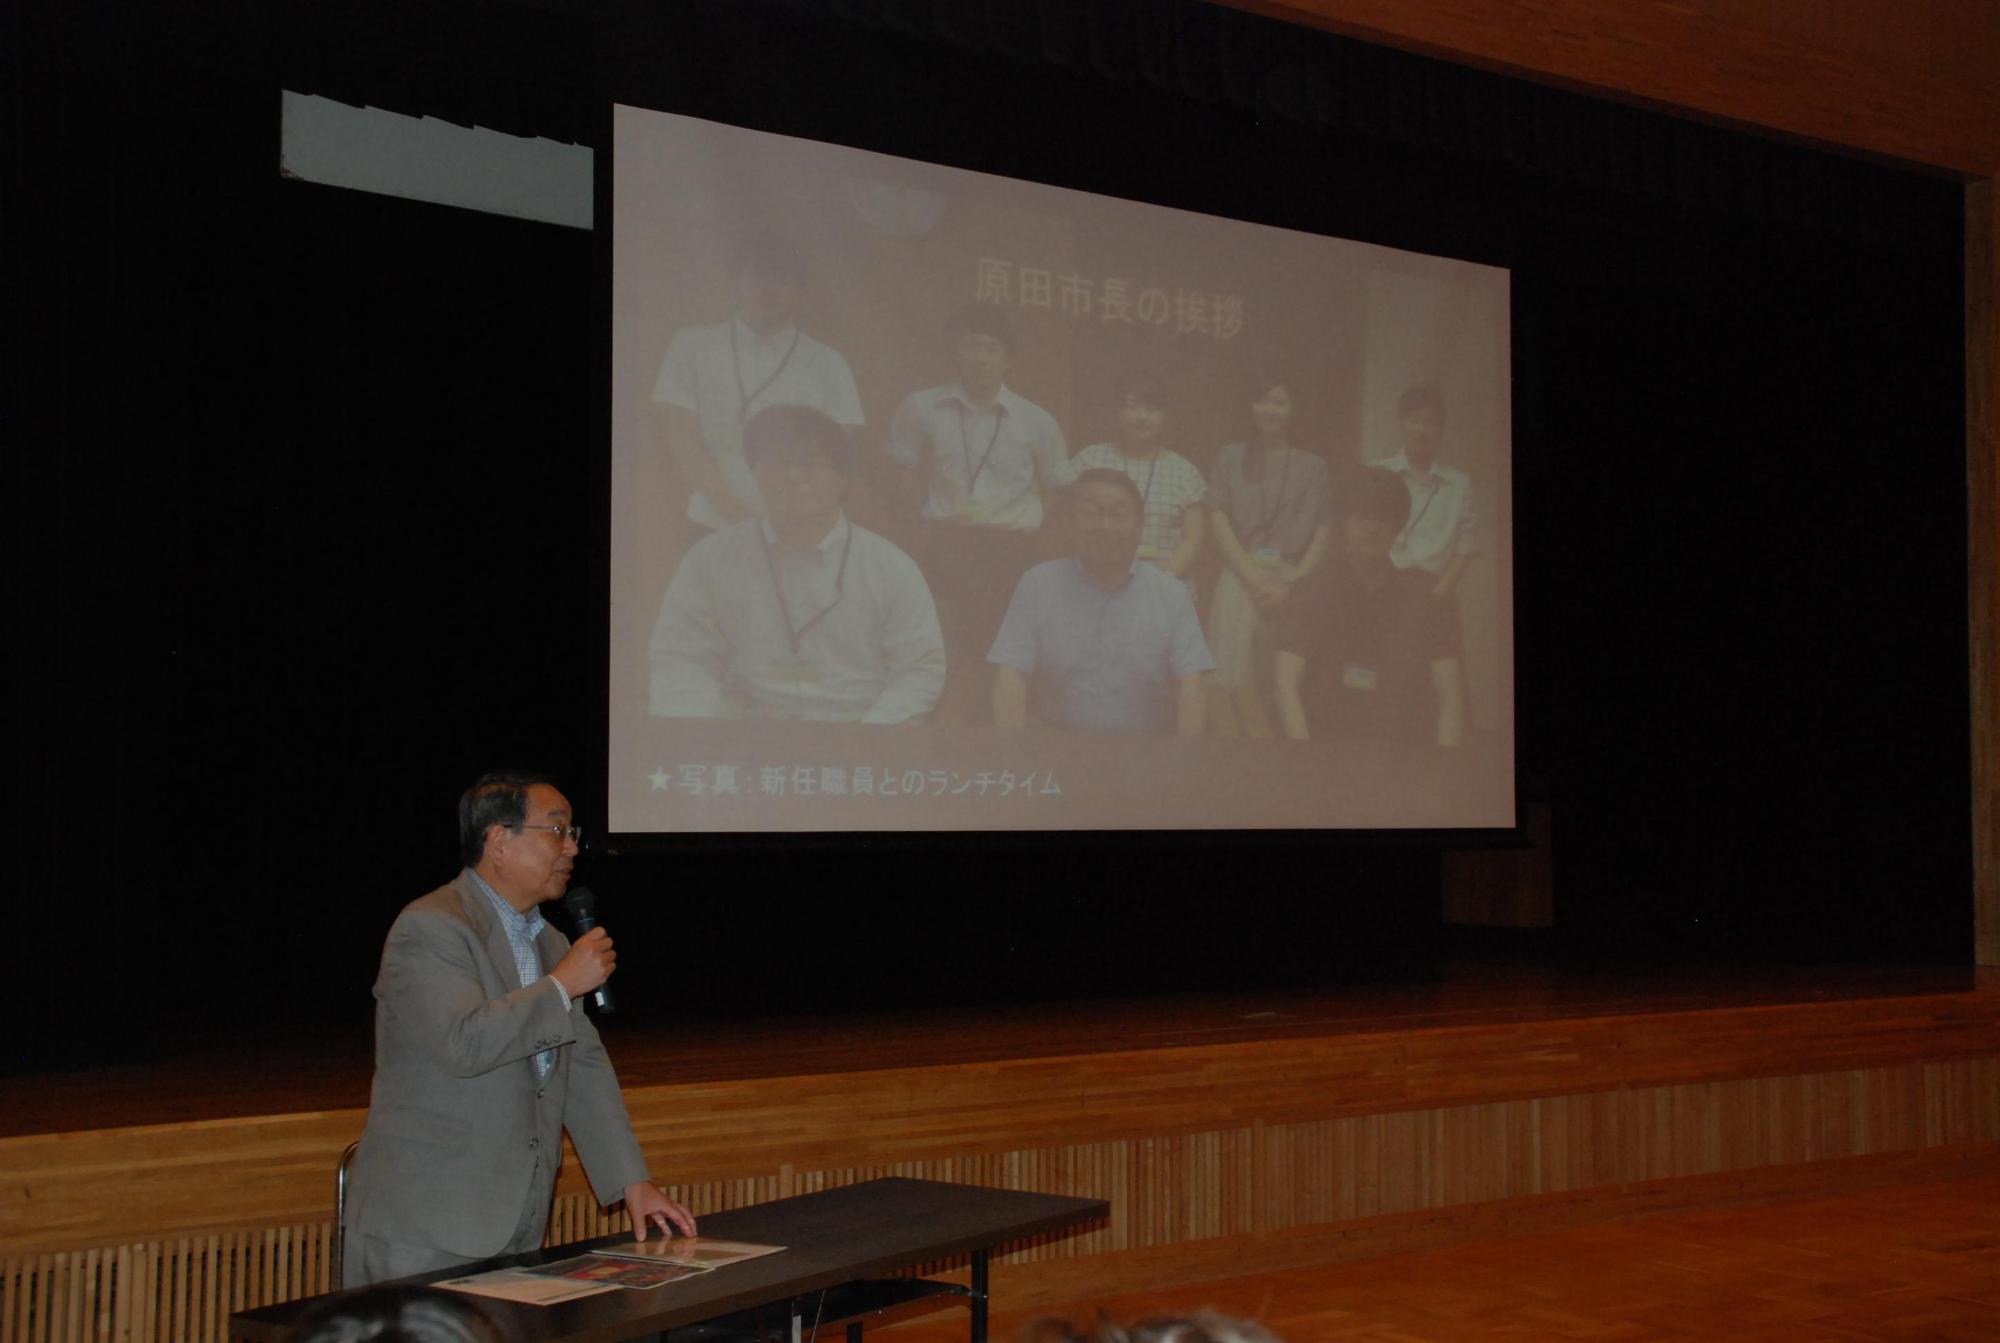 「恵庭市職員採用セミナー」にて講演をしている原田市長の写真